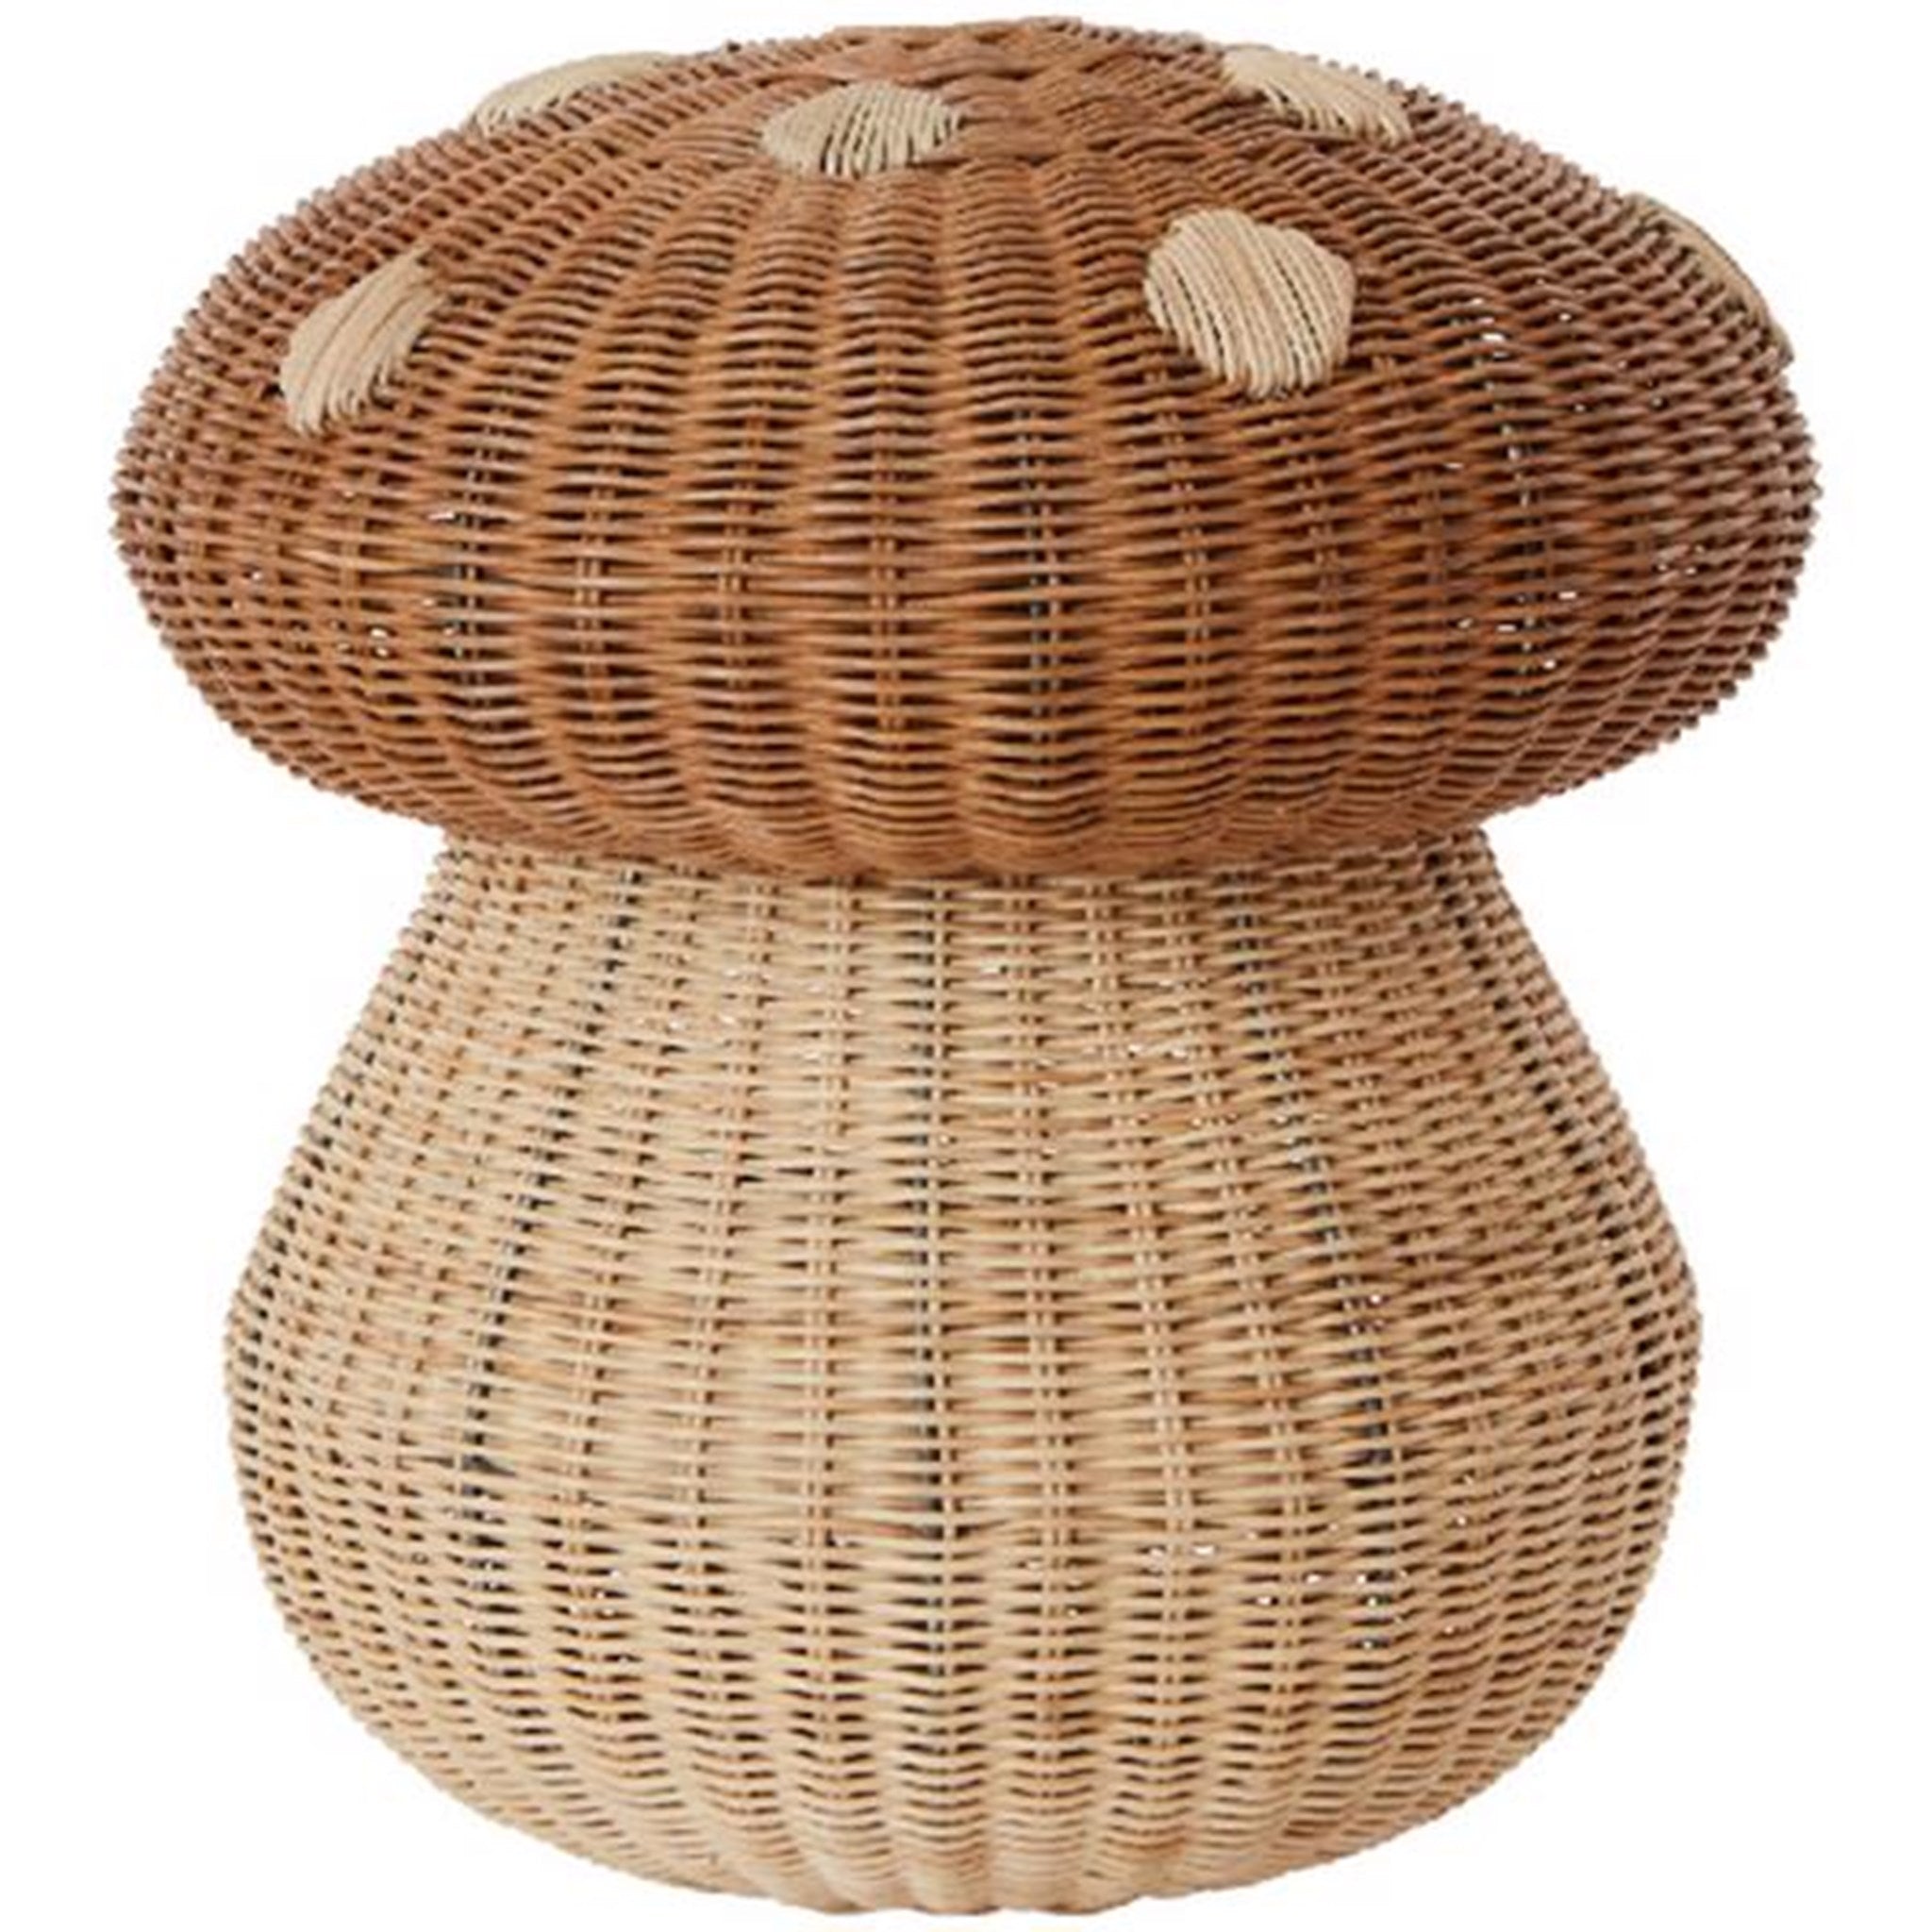 "OYOY Sponge Woven Basket - 在您的家中创造有序之美